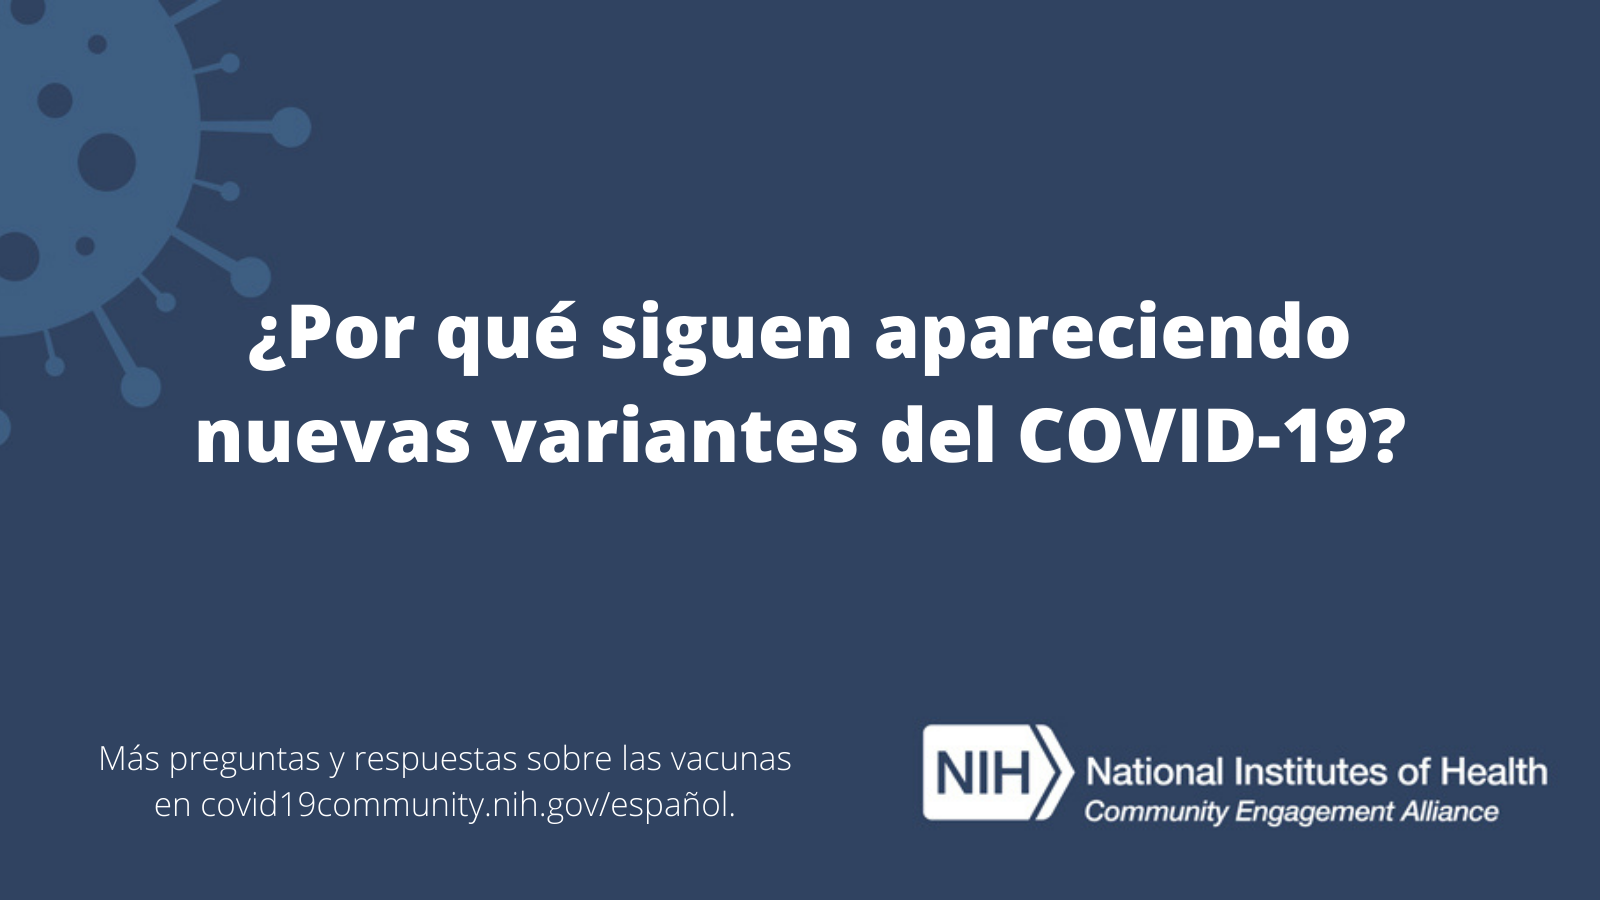 ¿Por qué siguen apareciendo nuevas variantes del COVID-19? Más preguntas y respuestas sobre las vacunas en covid19community.nih.gov/español.